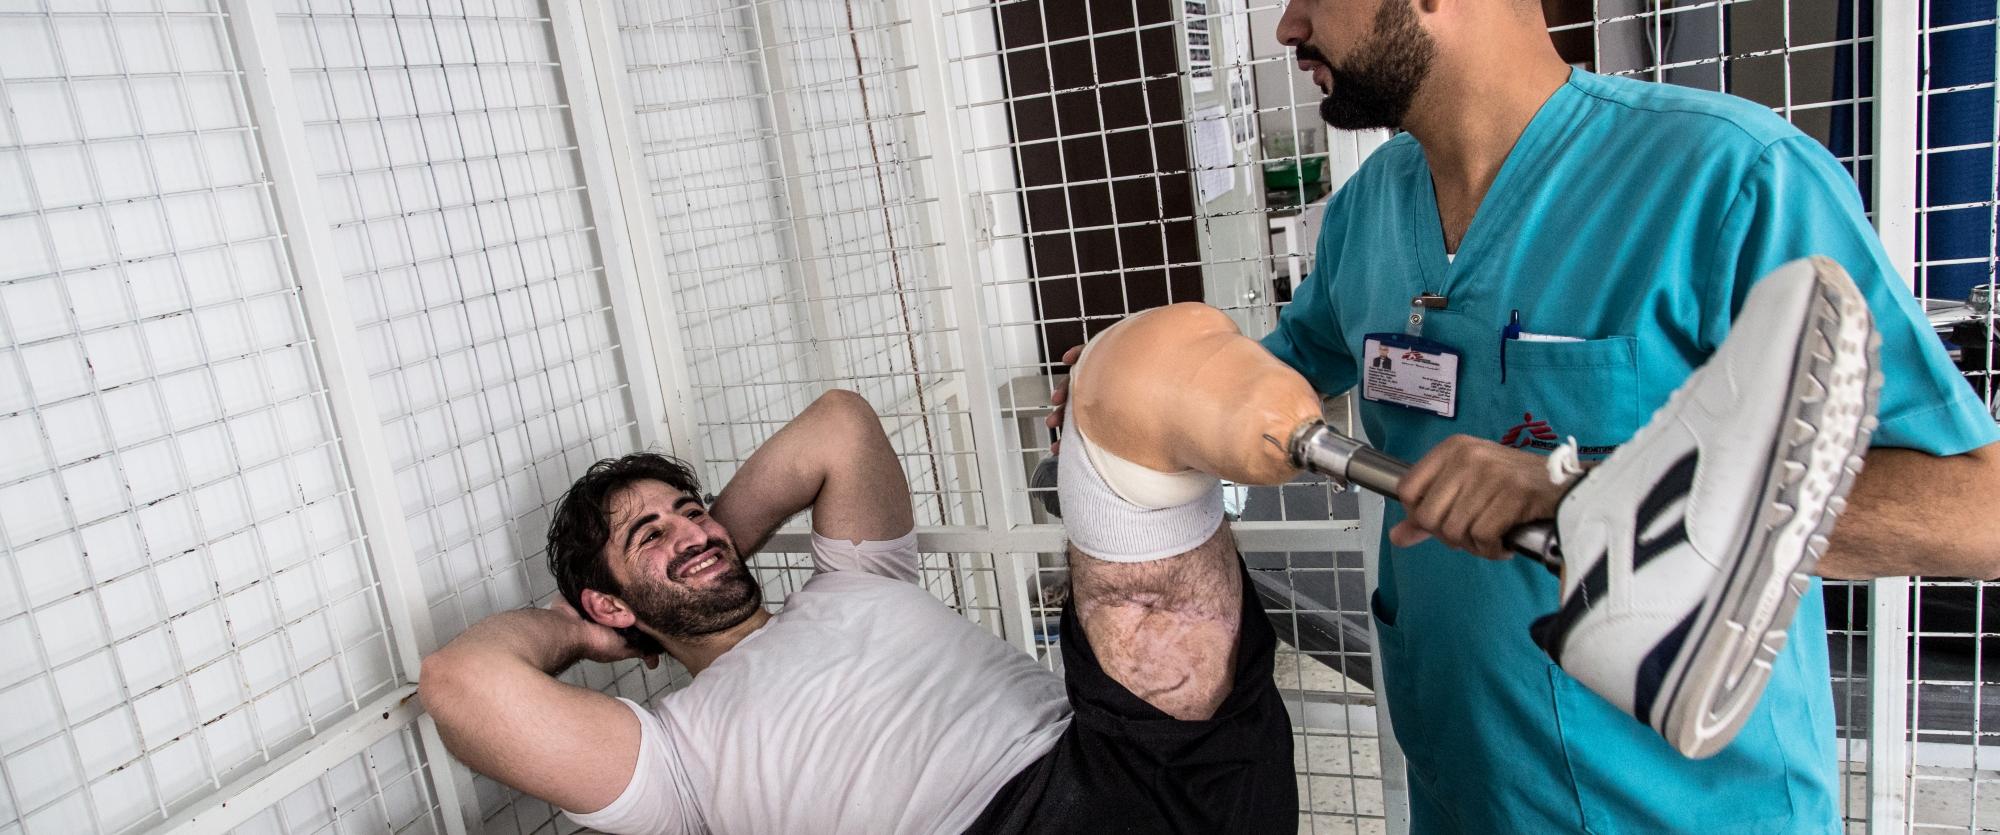 Cet homme est un Syrien de 23 ans. Il a étudié le droit à Damas. Il était parmi les premiers révolutionnaires à Deraa, dans la brigade de l'ASL. C'est la troisième fois qu'il est blessé, une bombe lui a enlevé la jambe. Hôpital MSF de chirurgie reconstructrice à Amman, en Jordanie, avril 2016. 